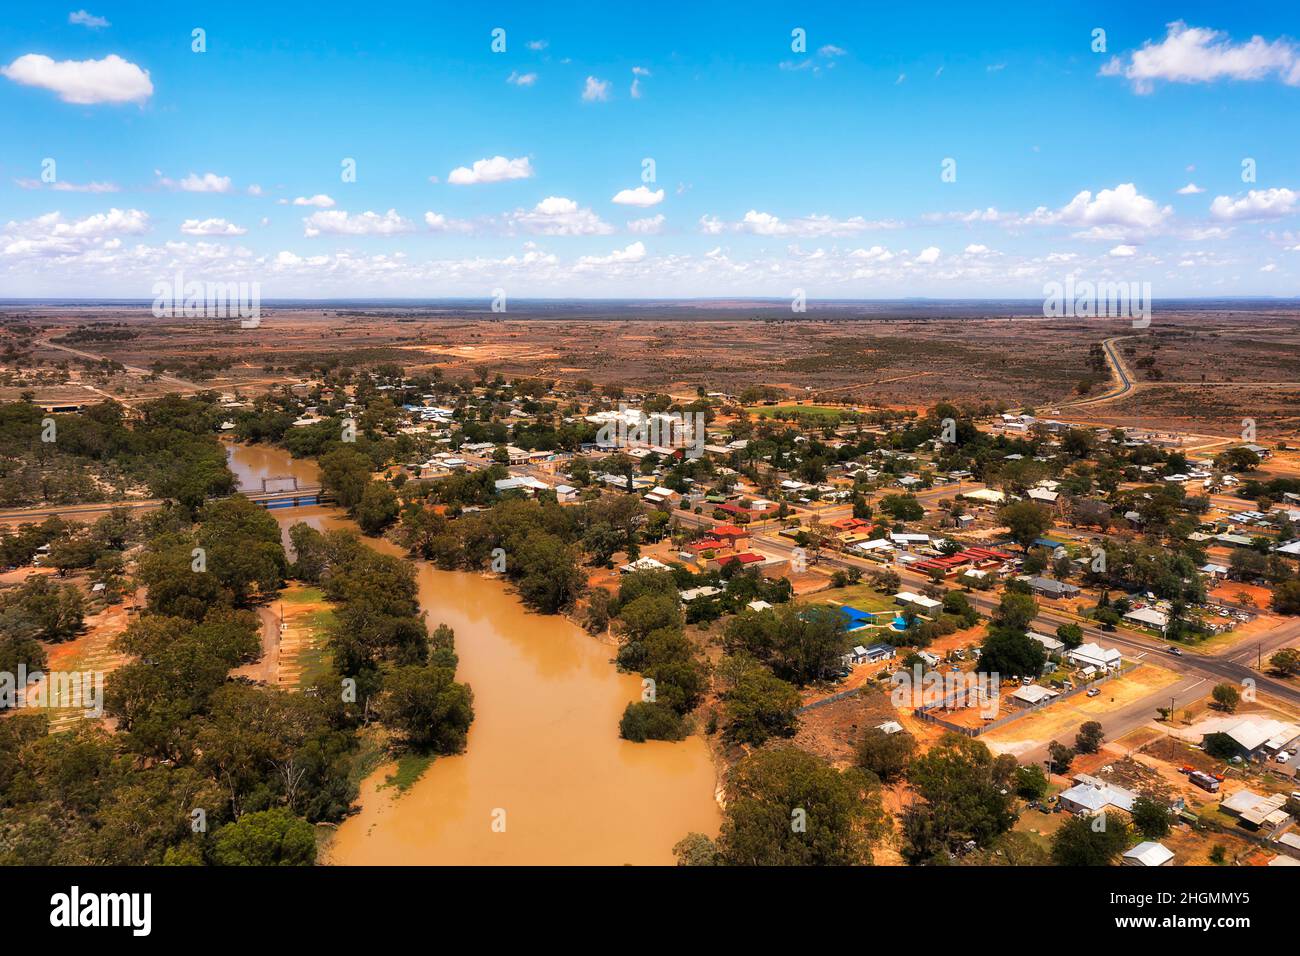 Wilcannia Stadt am Darling River im australischen Outback - Zwischenstopp und Tankstellen am Barrier Highway - Luftlandschaft. Stockfoto